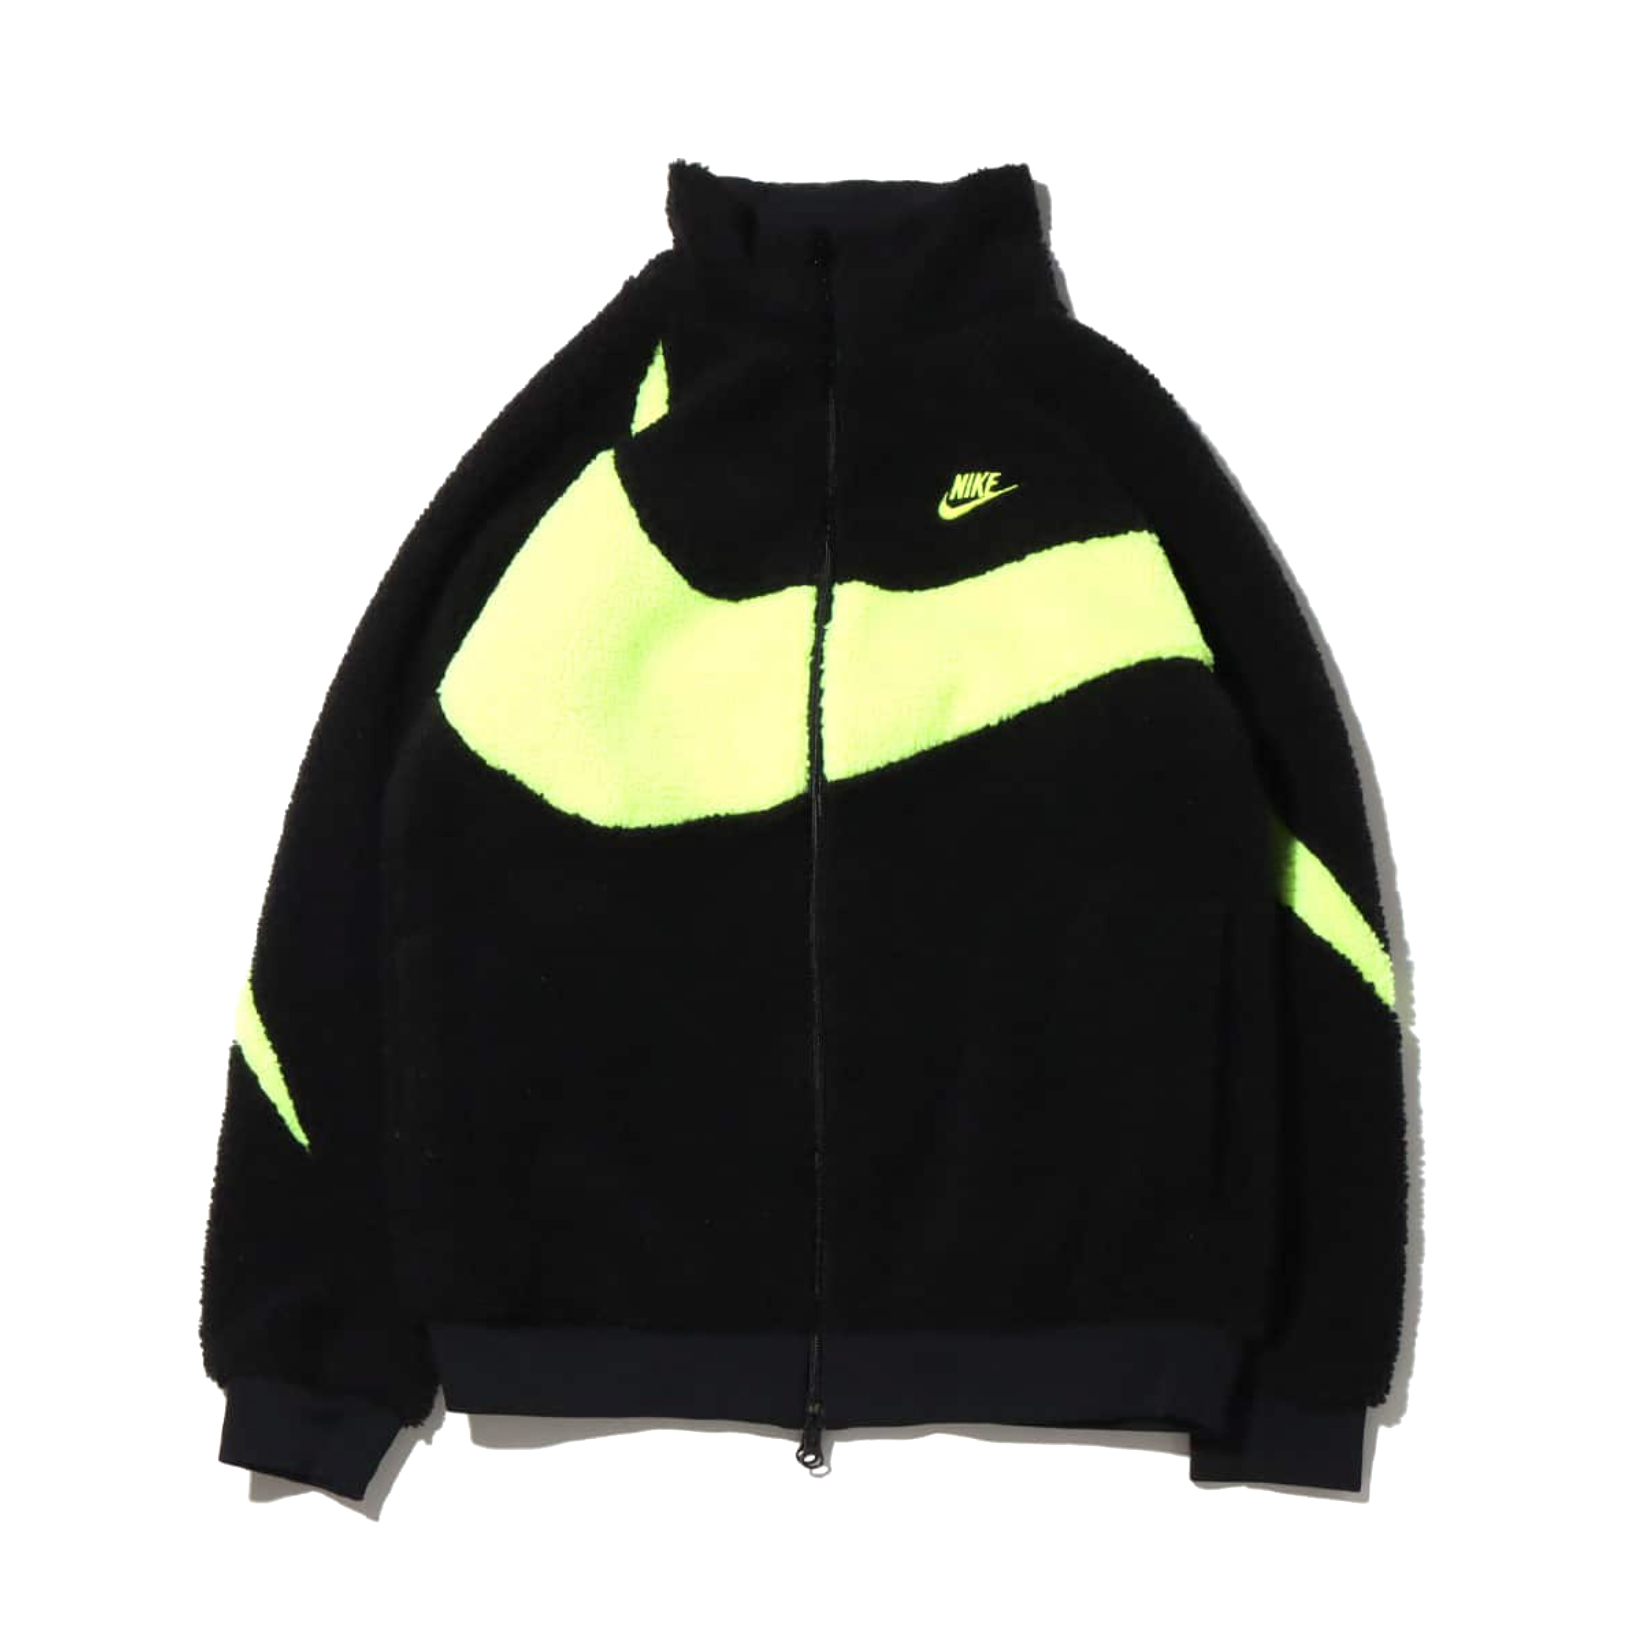 Nike Big Swoosh Reversible Boa Jacket (Asia Sizing) Black Chili